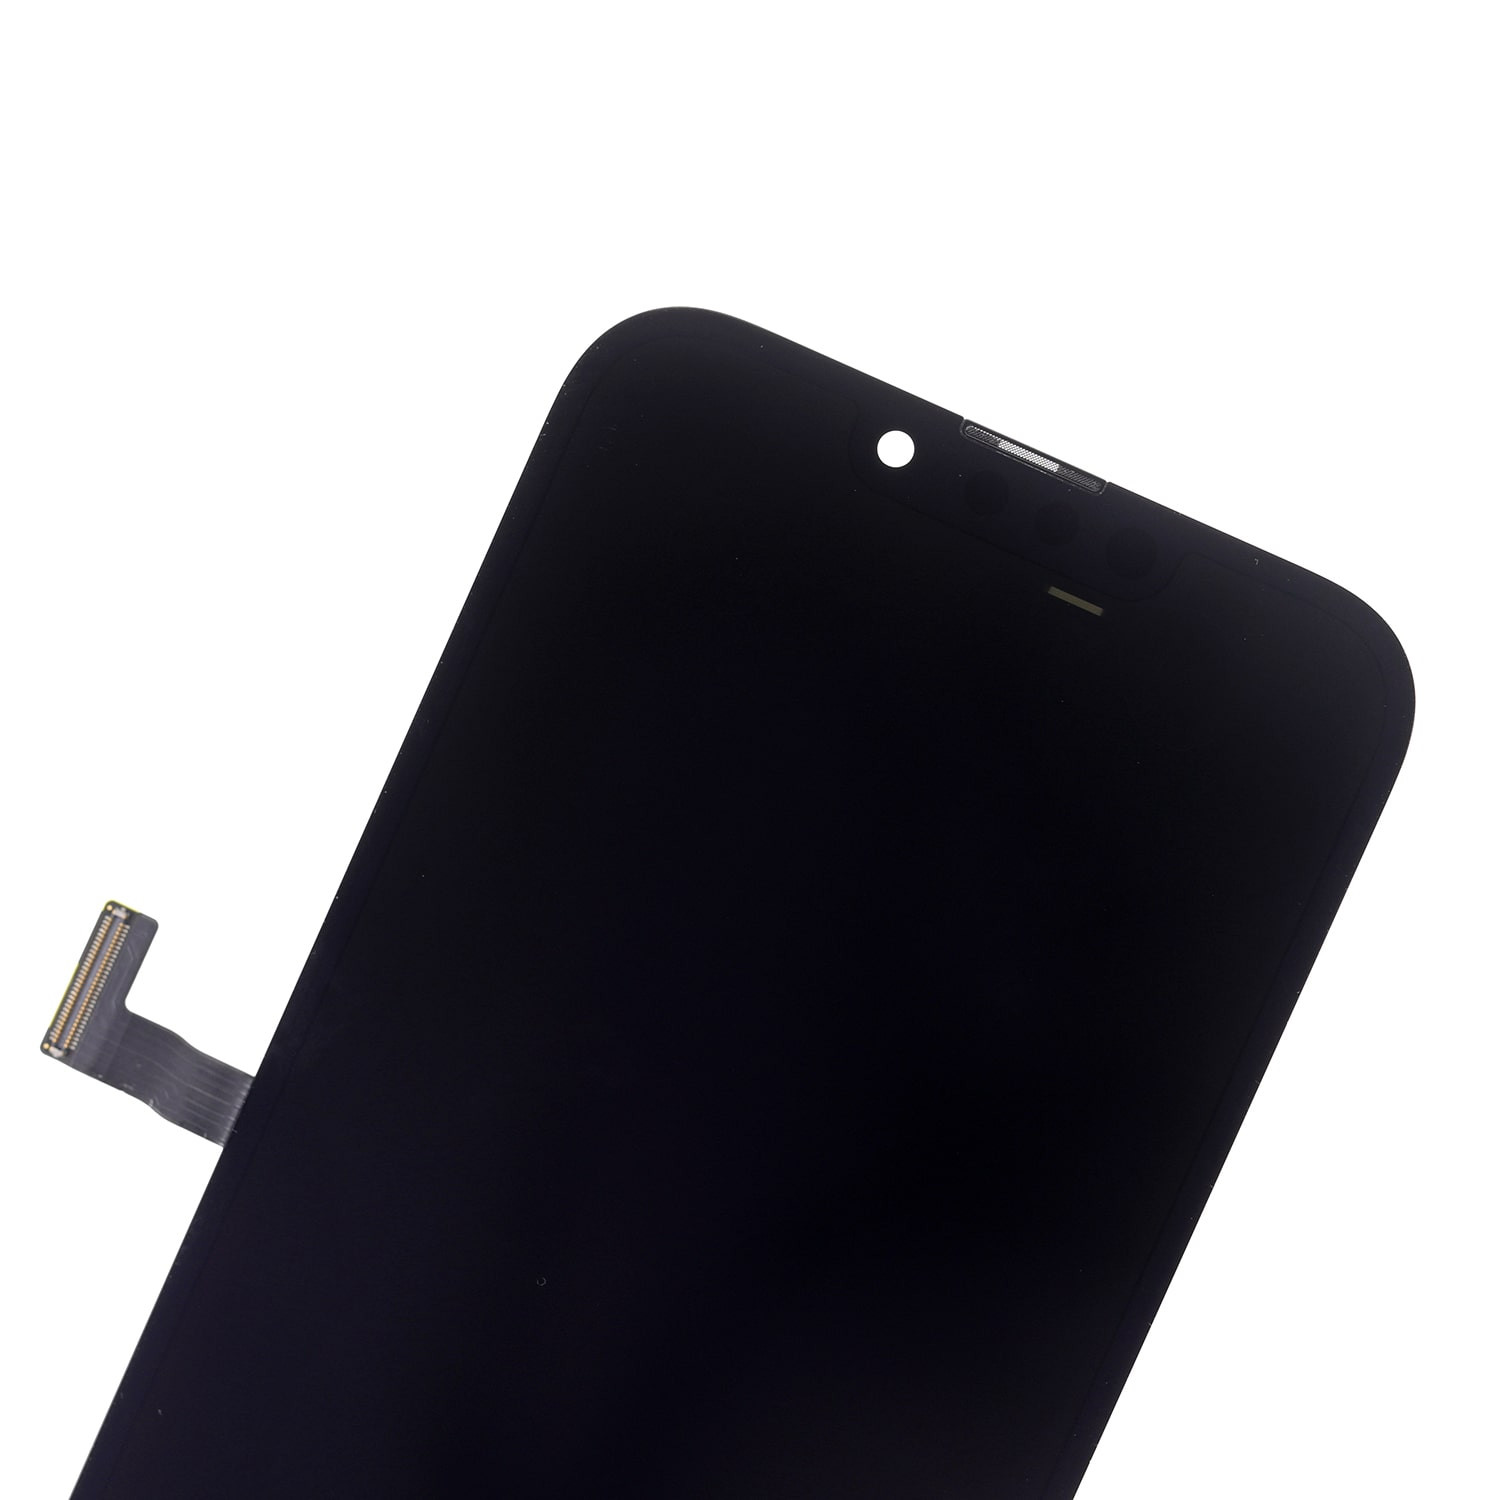 iPhone 13 Pro üçün OLED montaj ekranının dəyişdirilməsi - 3 